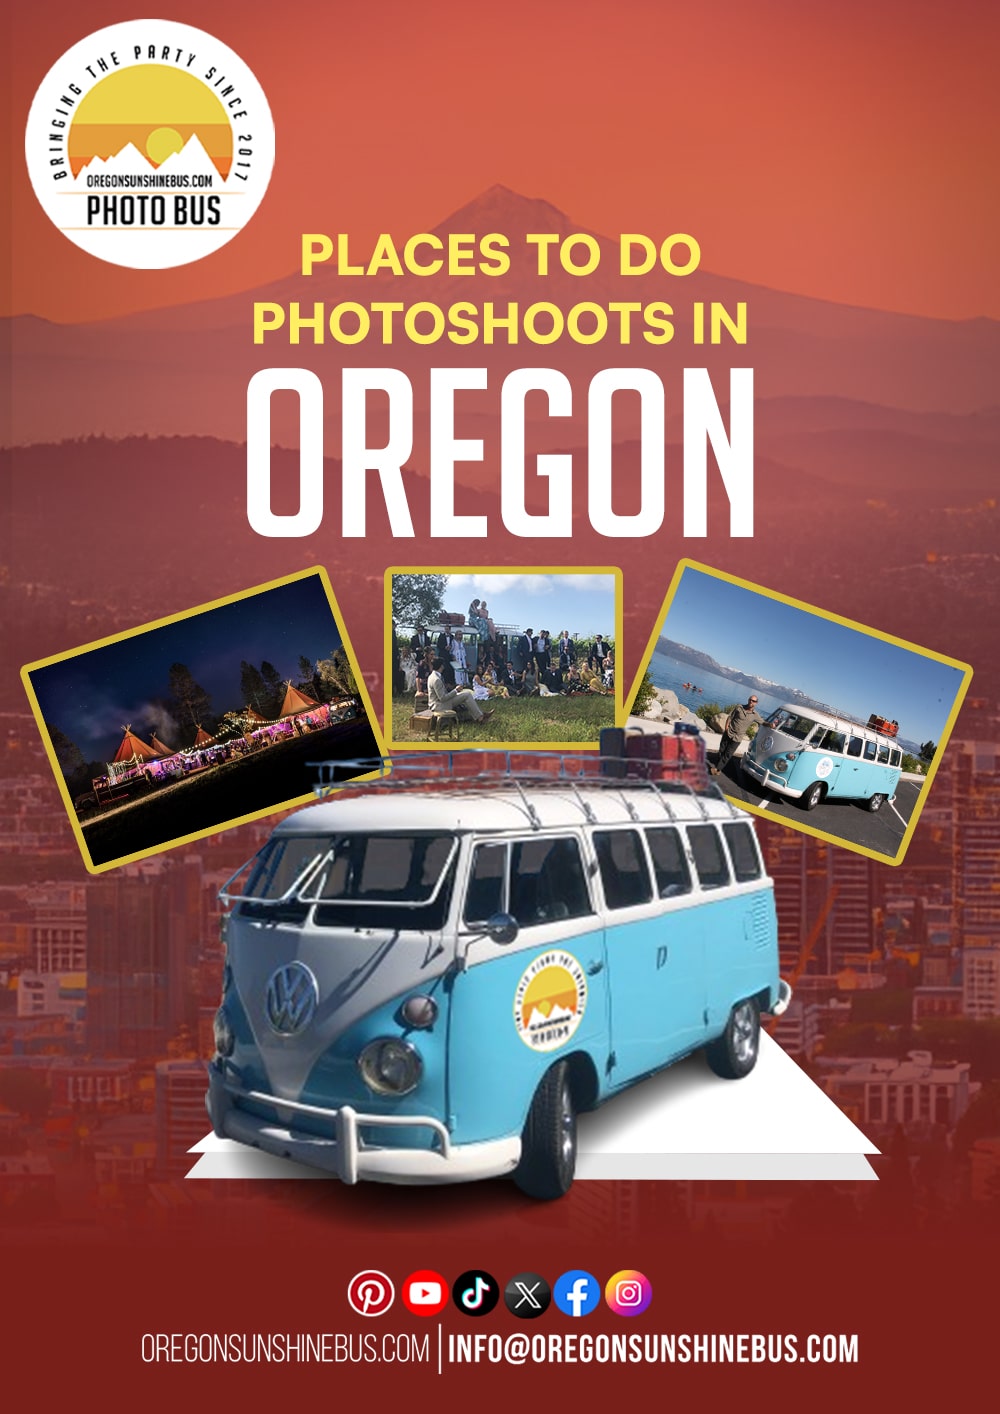 Capture unforgettable Oregon memories with Oregon Sunshine Bus